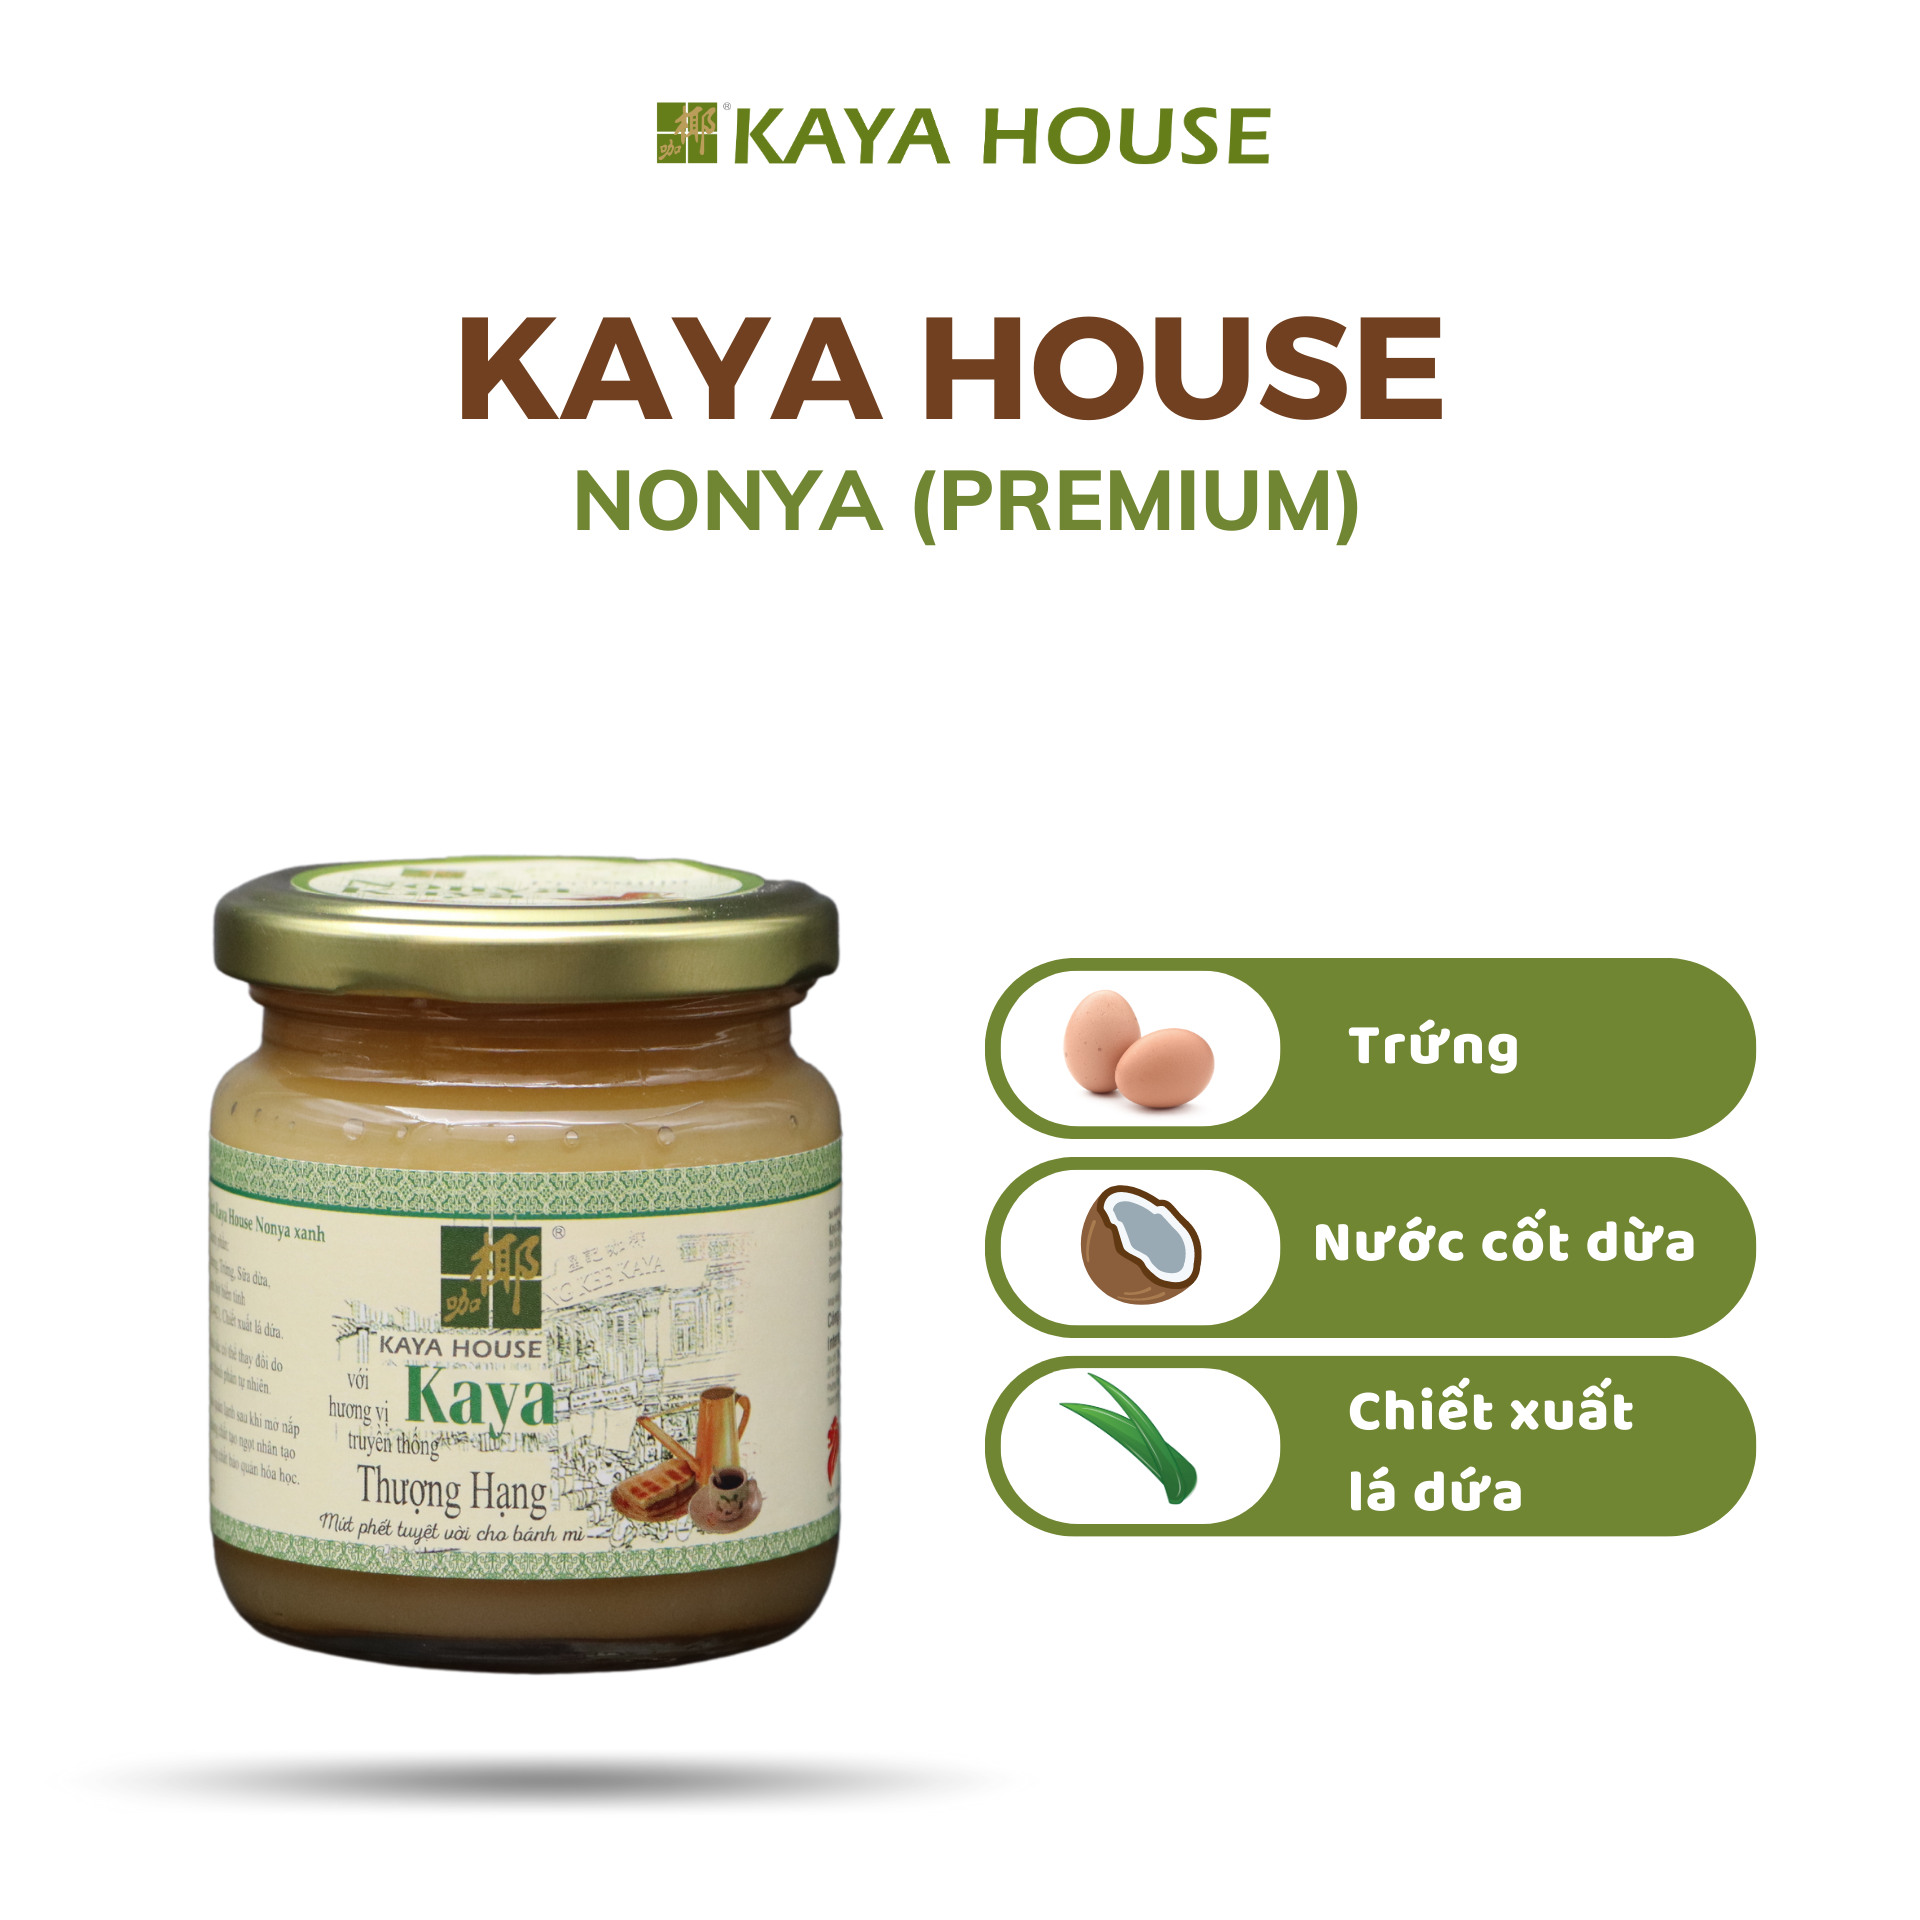 Bộ 2 hũ mứt Kaya Singapore Thượng hạng - Kaya House - Ăn kèm với Sandwich, làm nguyên liệu nấu ăn